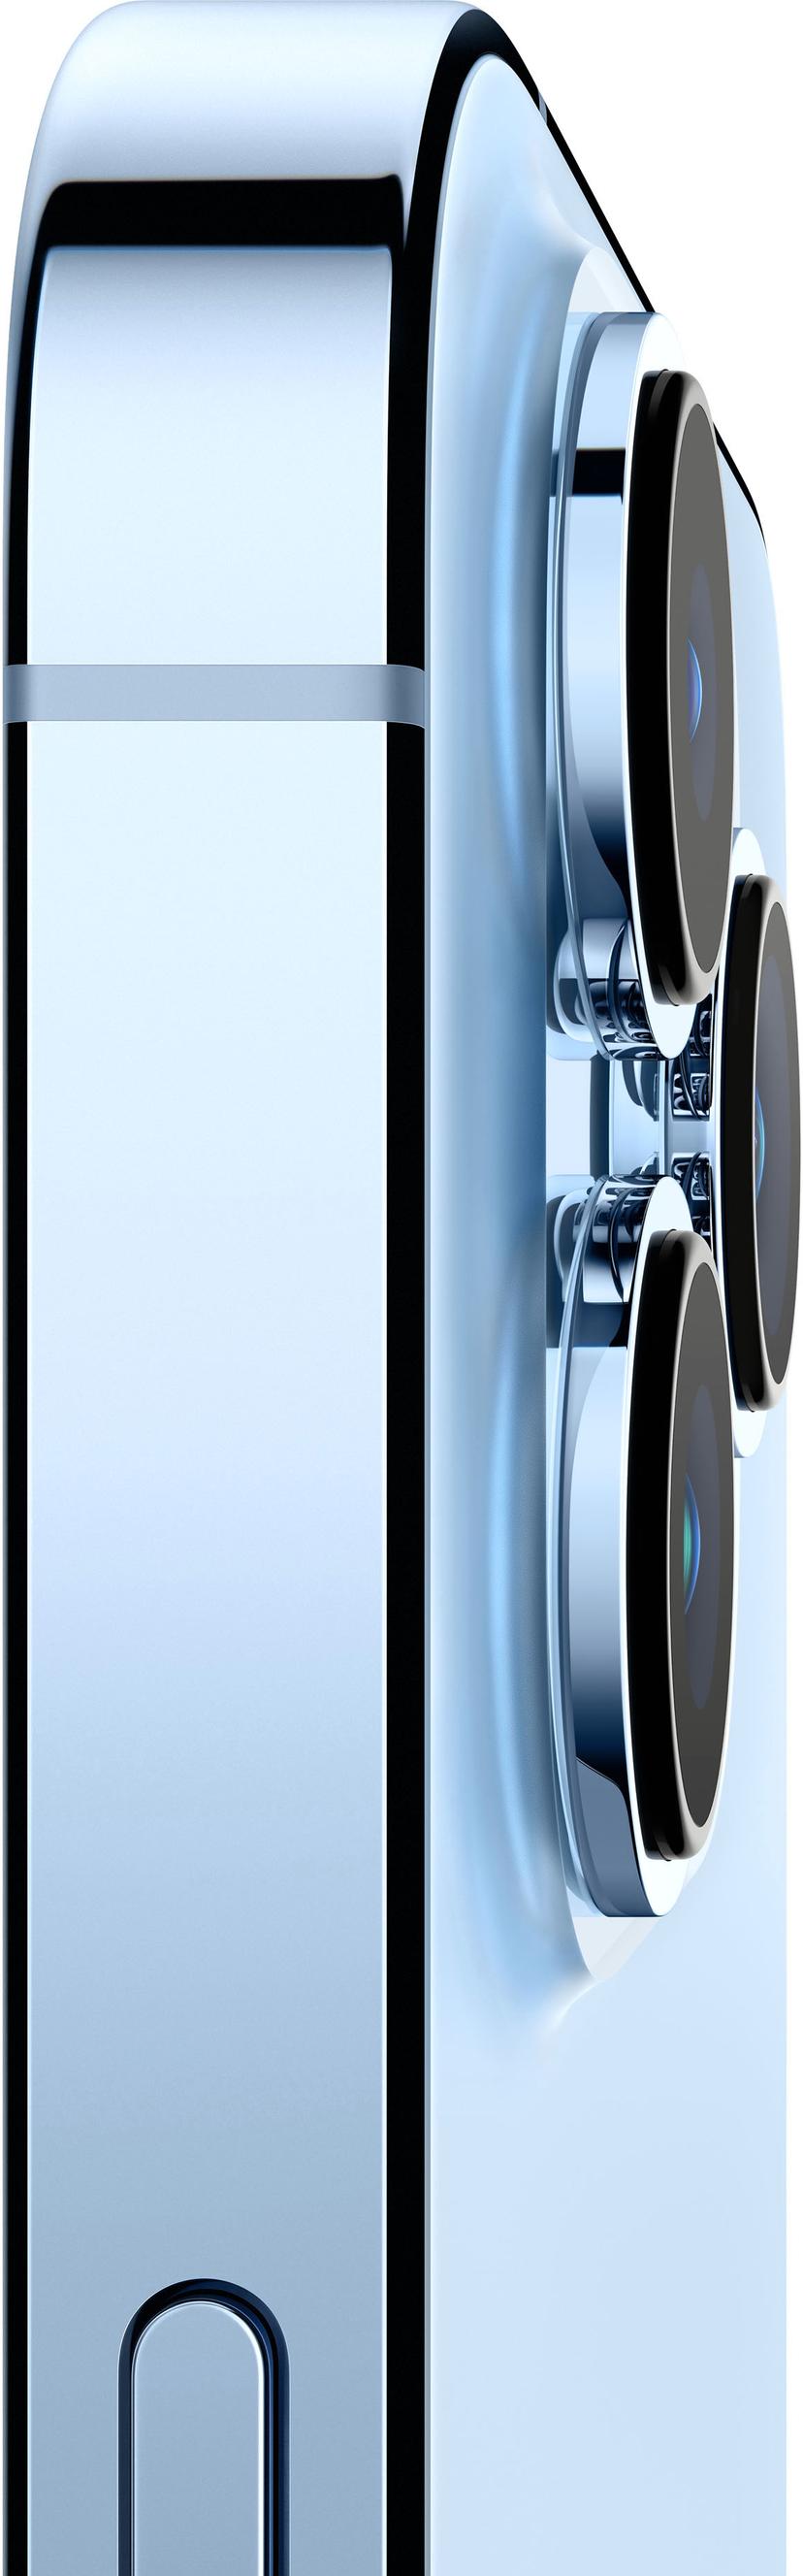 Apple iPhone 13 Pro Max 512GB Sierrablå